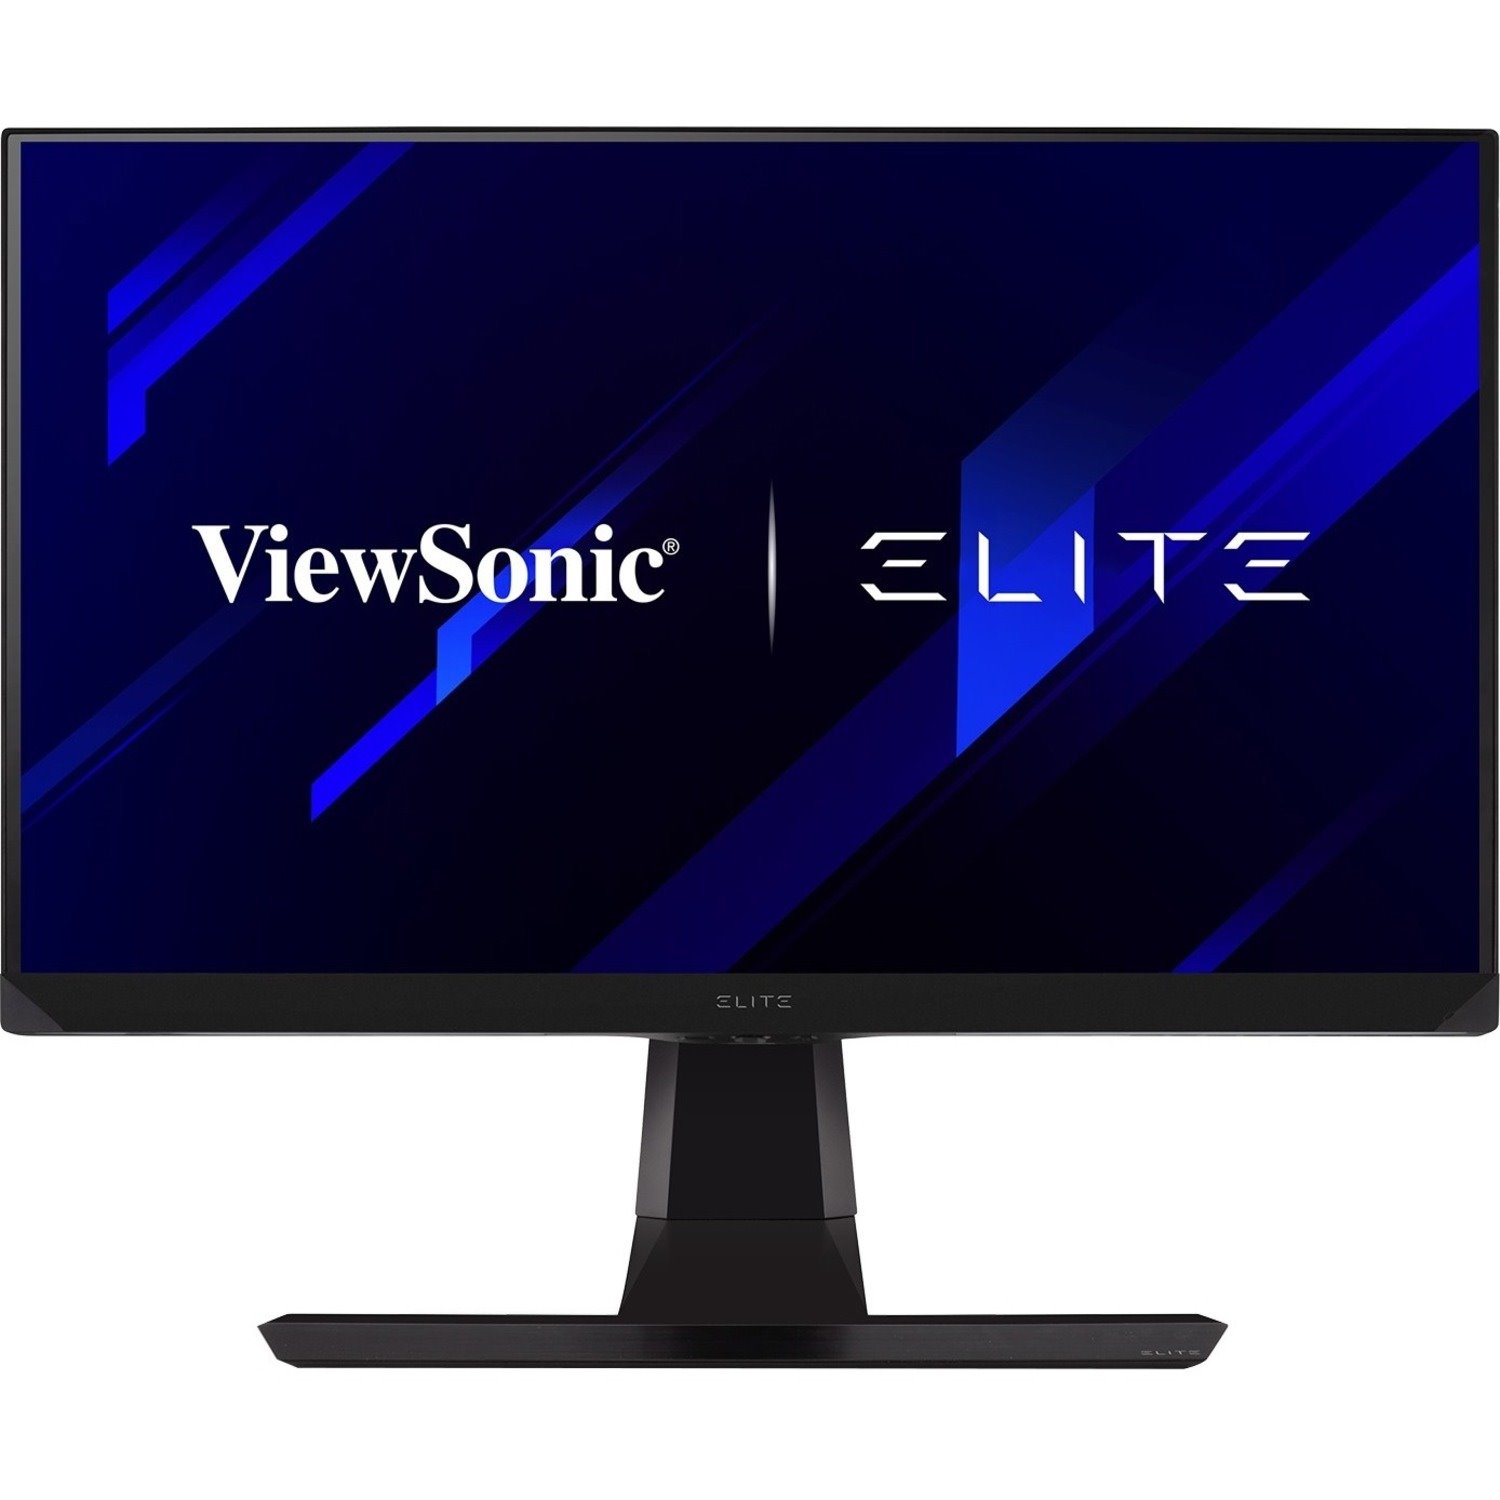 ViewSonic Elite XG271QG 27" WQHD LED Gaming LCD Monitor - 16:9 - Black